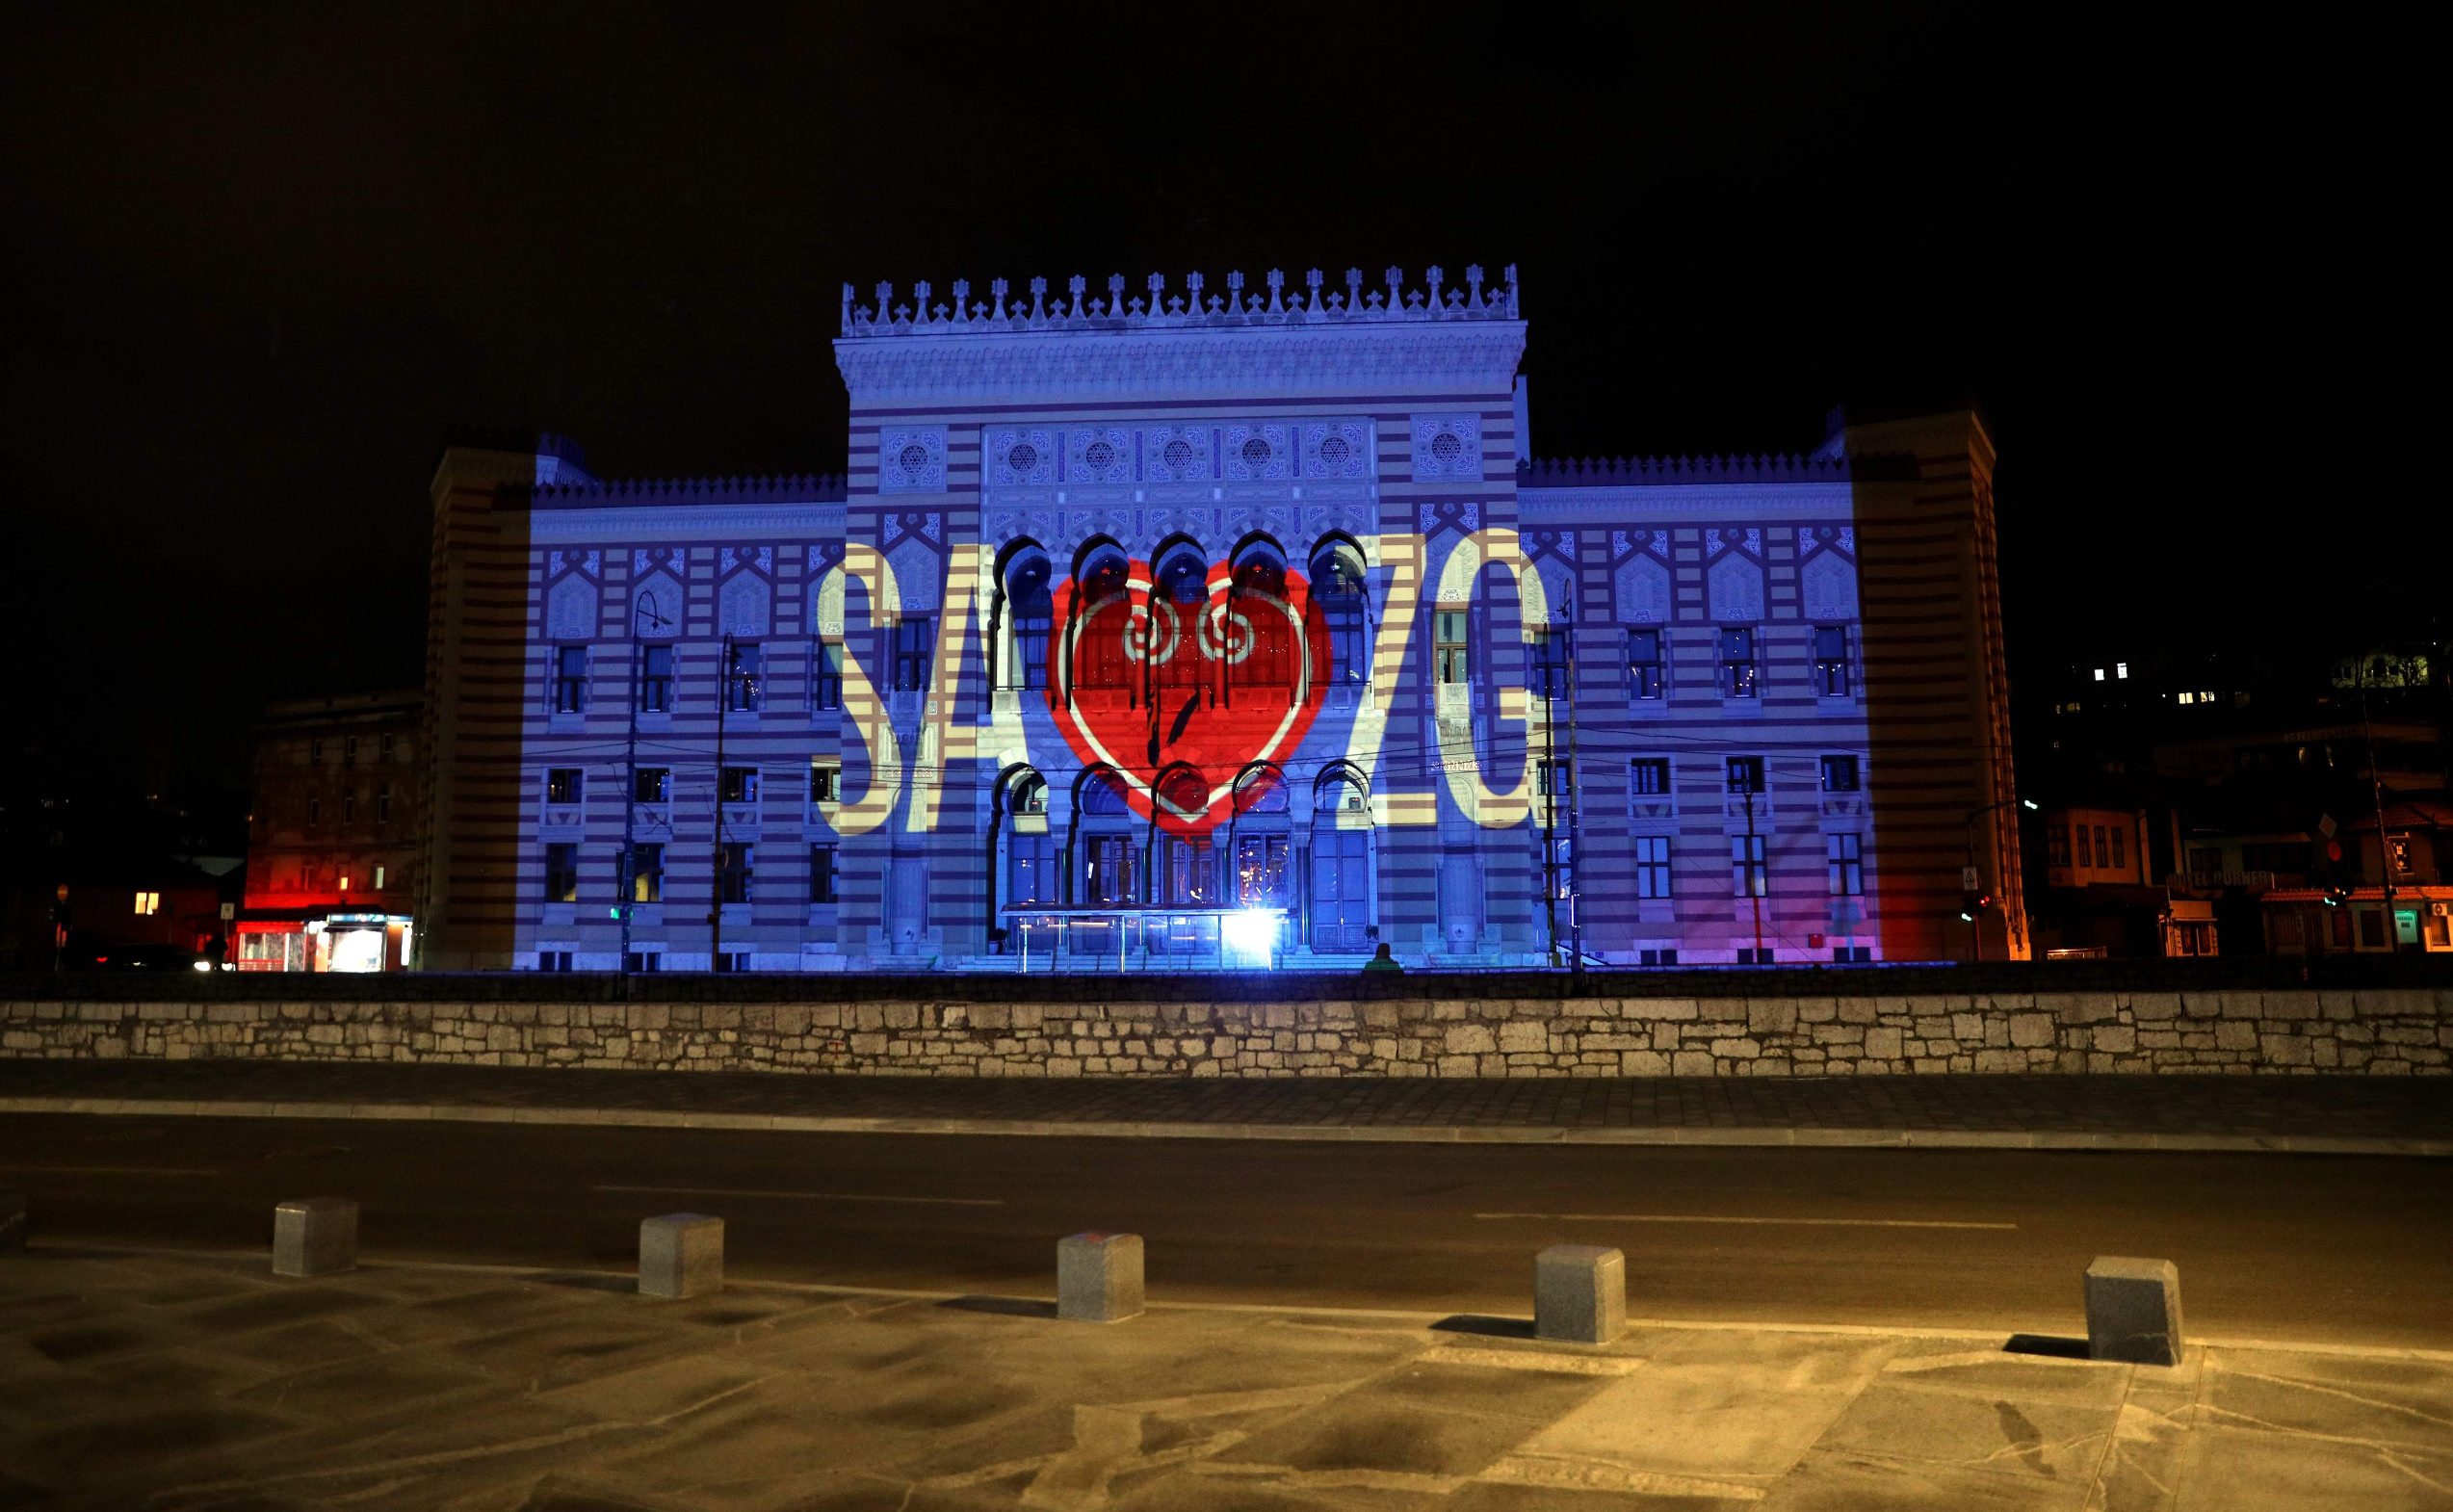 Na sarajevskoj vijećnici se pojavila poruka “Sarajevo, Zagrebu” sa srcem u sredini